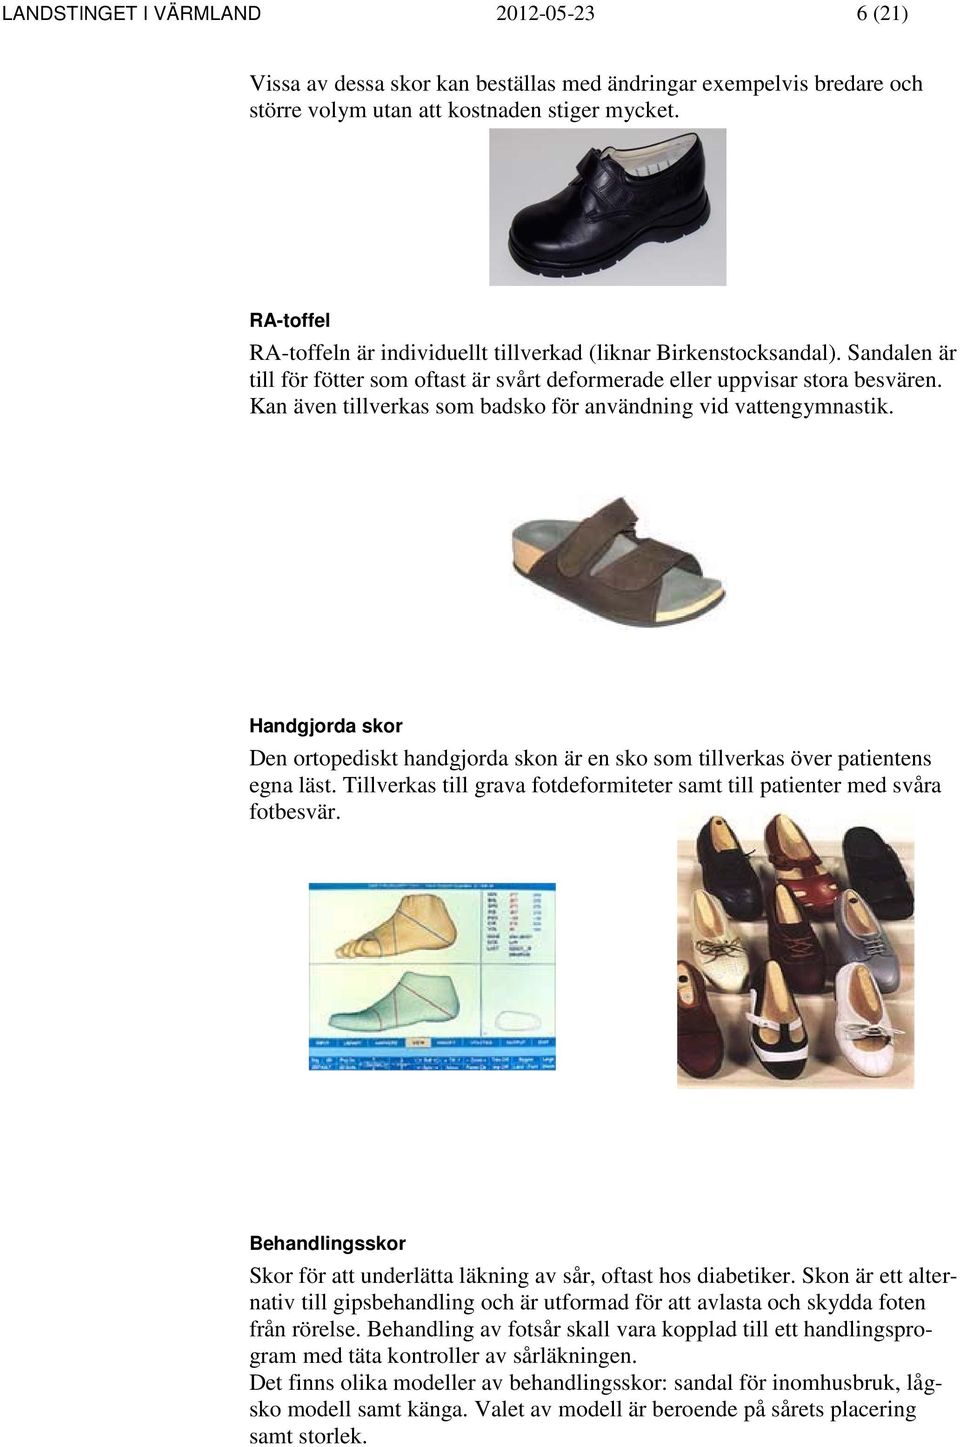 Kan även tillverkas som badsko för användning vid vattengymnastik. Handgjorda skor Den ortopediskt handgjorda skon är en sko som tillverkas över patientens egna läst.